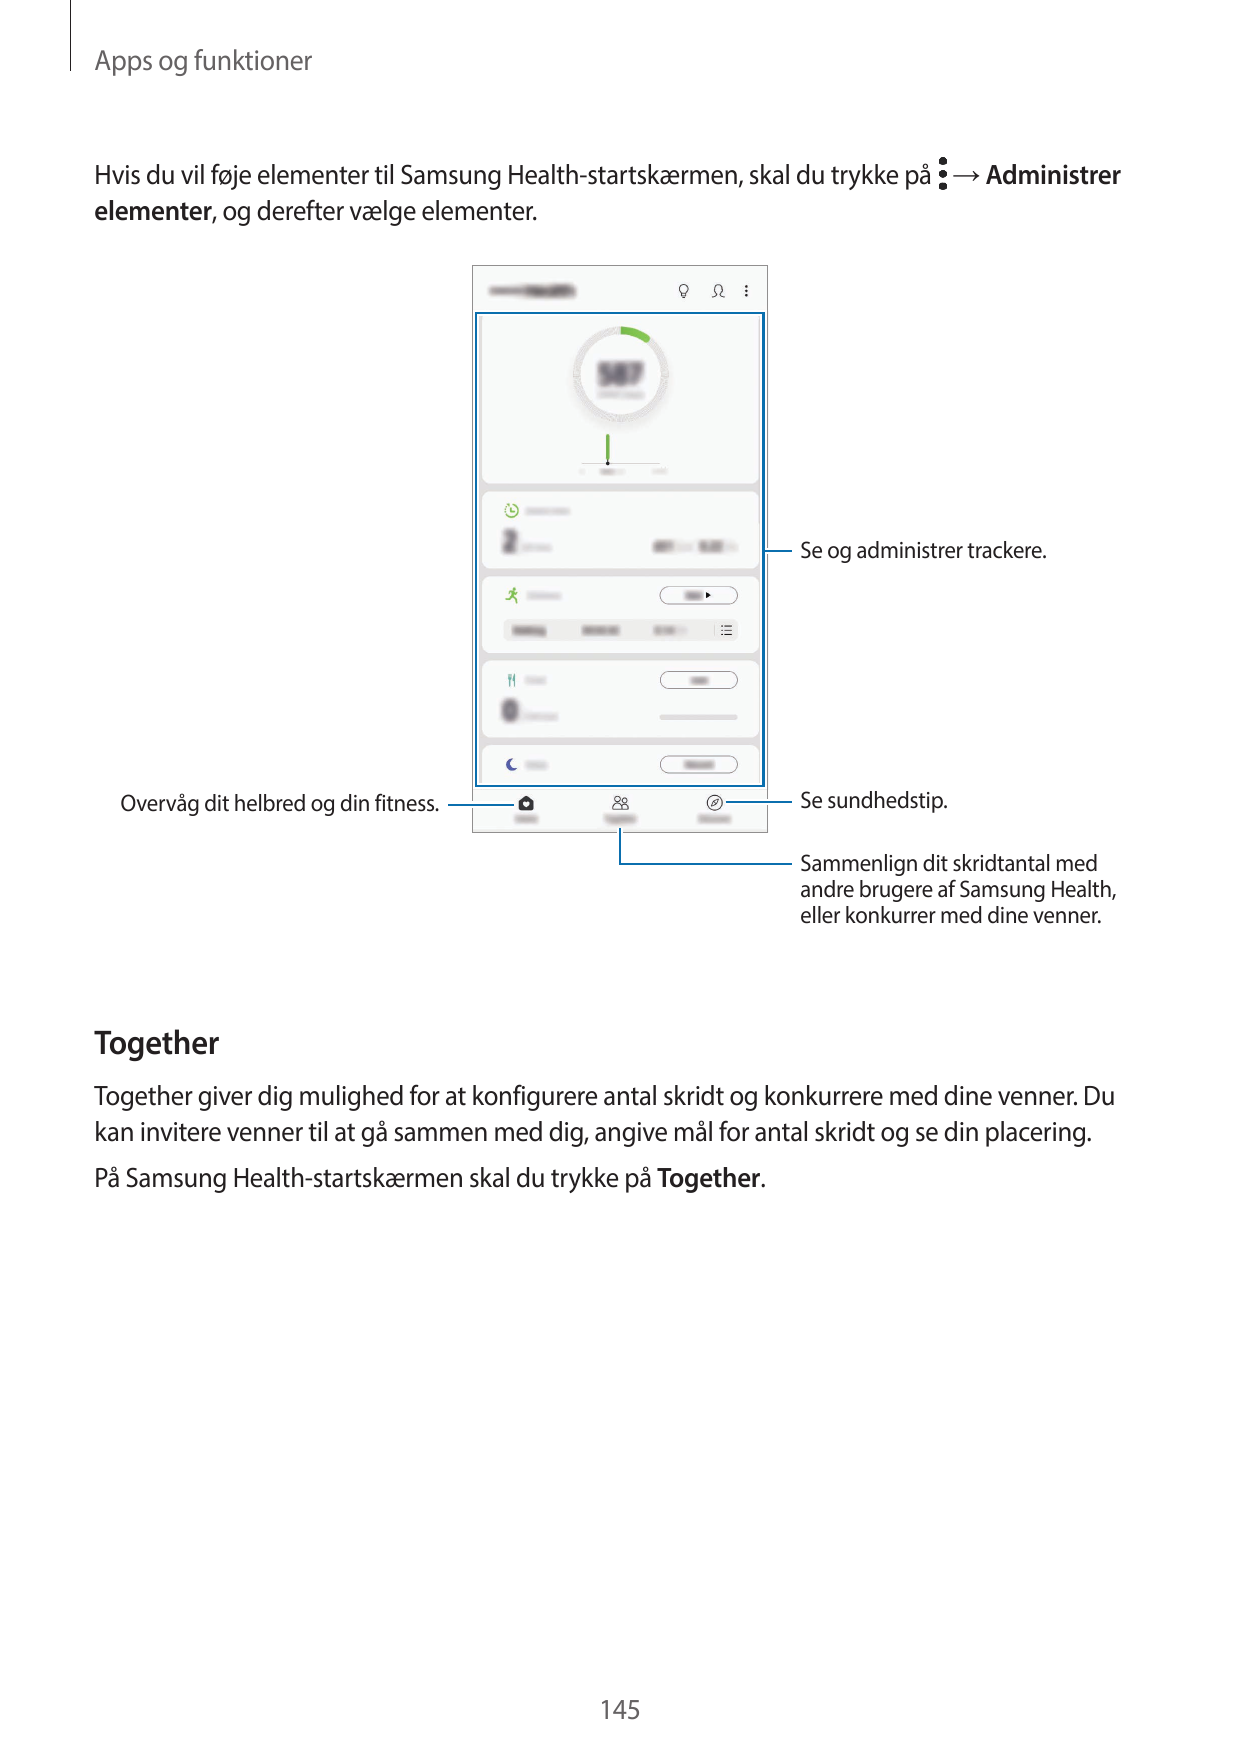 Apps og funktionerHvis du vil føje elementer til Samsung Health-startskærmen, skal du trykke på → Administrerelementer, og deref